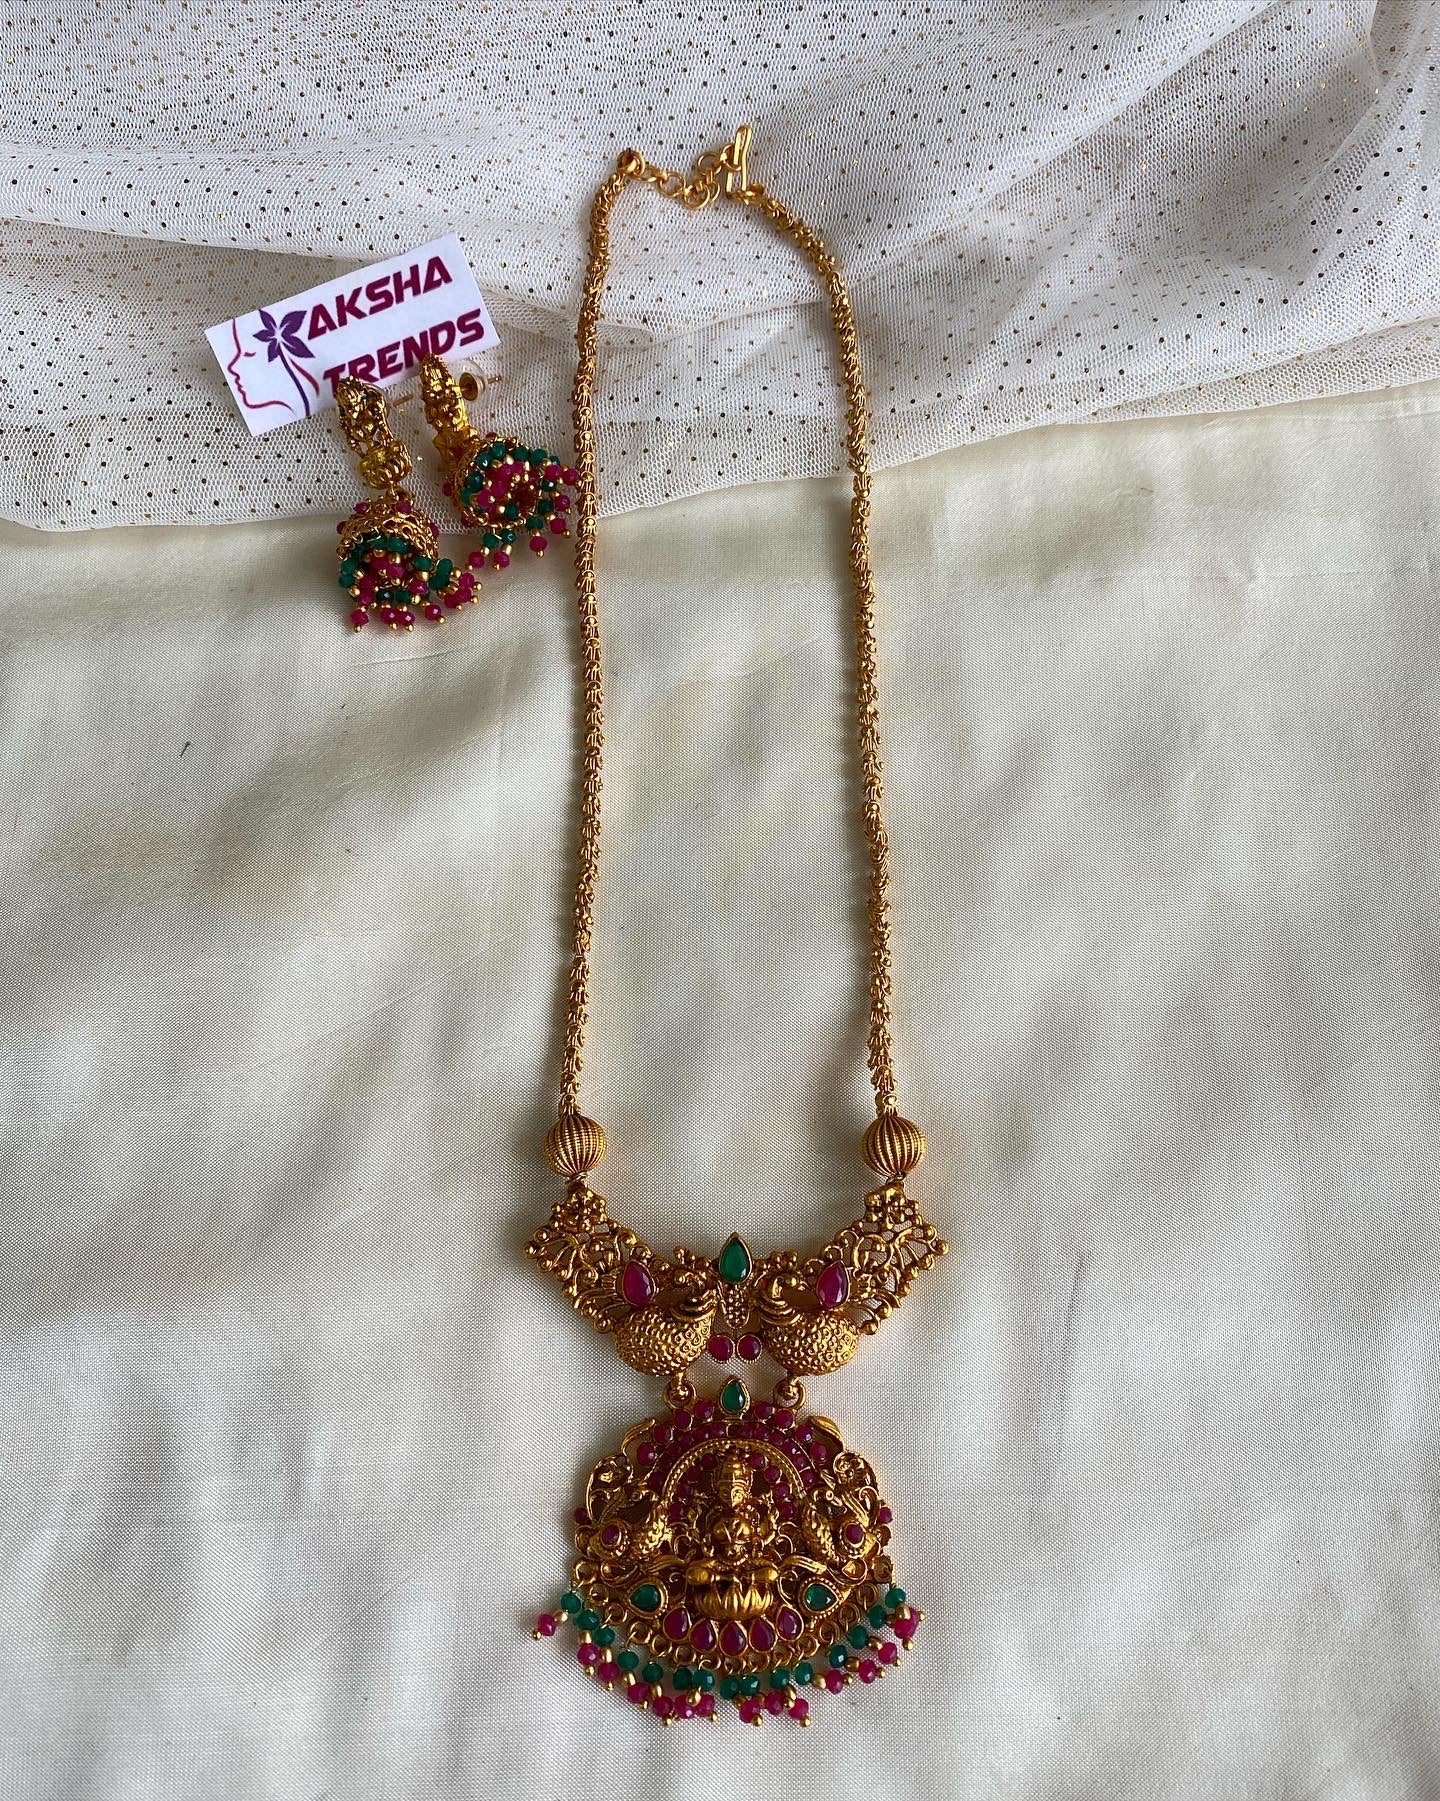 Lakshmi pendant chain Aksha Trends